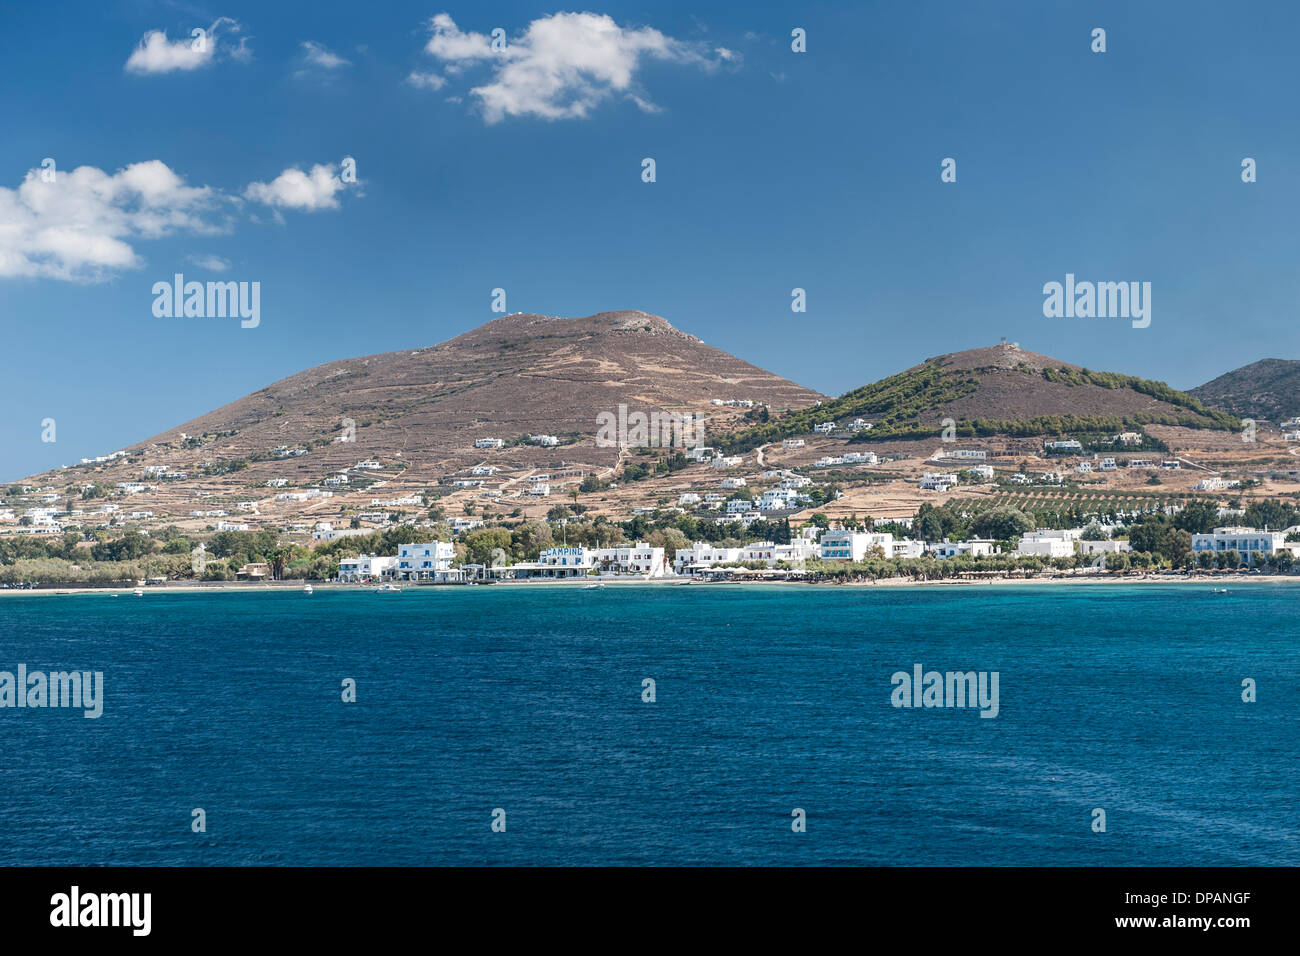 La isla griega de Paros, en el Mar Egeo. Foto de stock